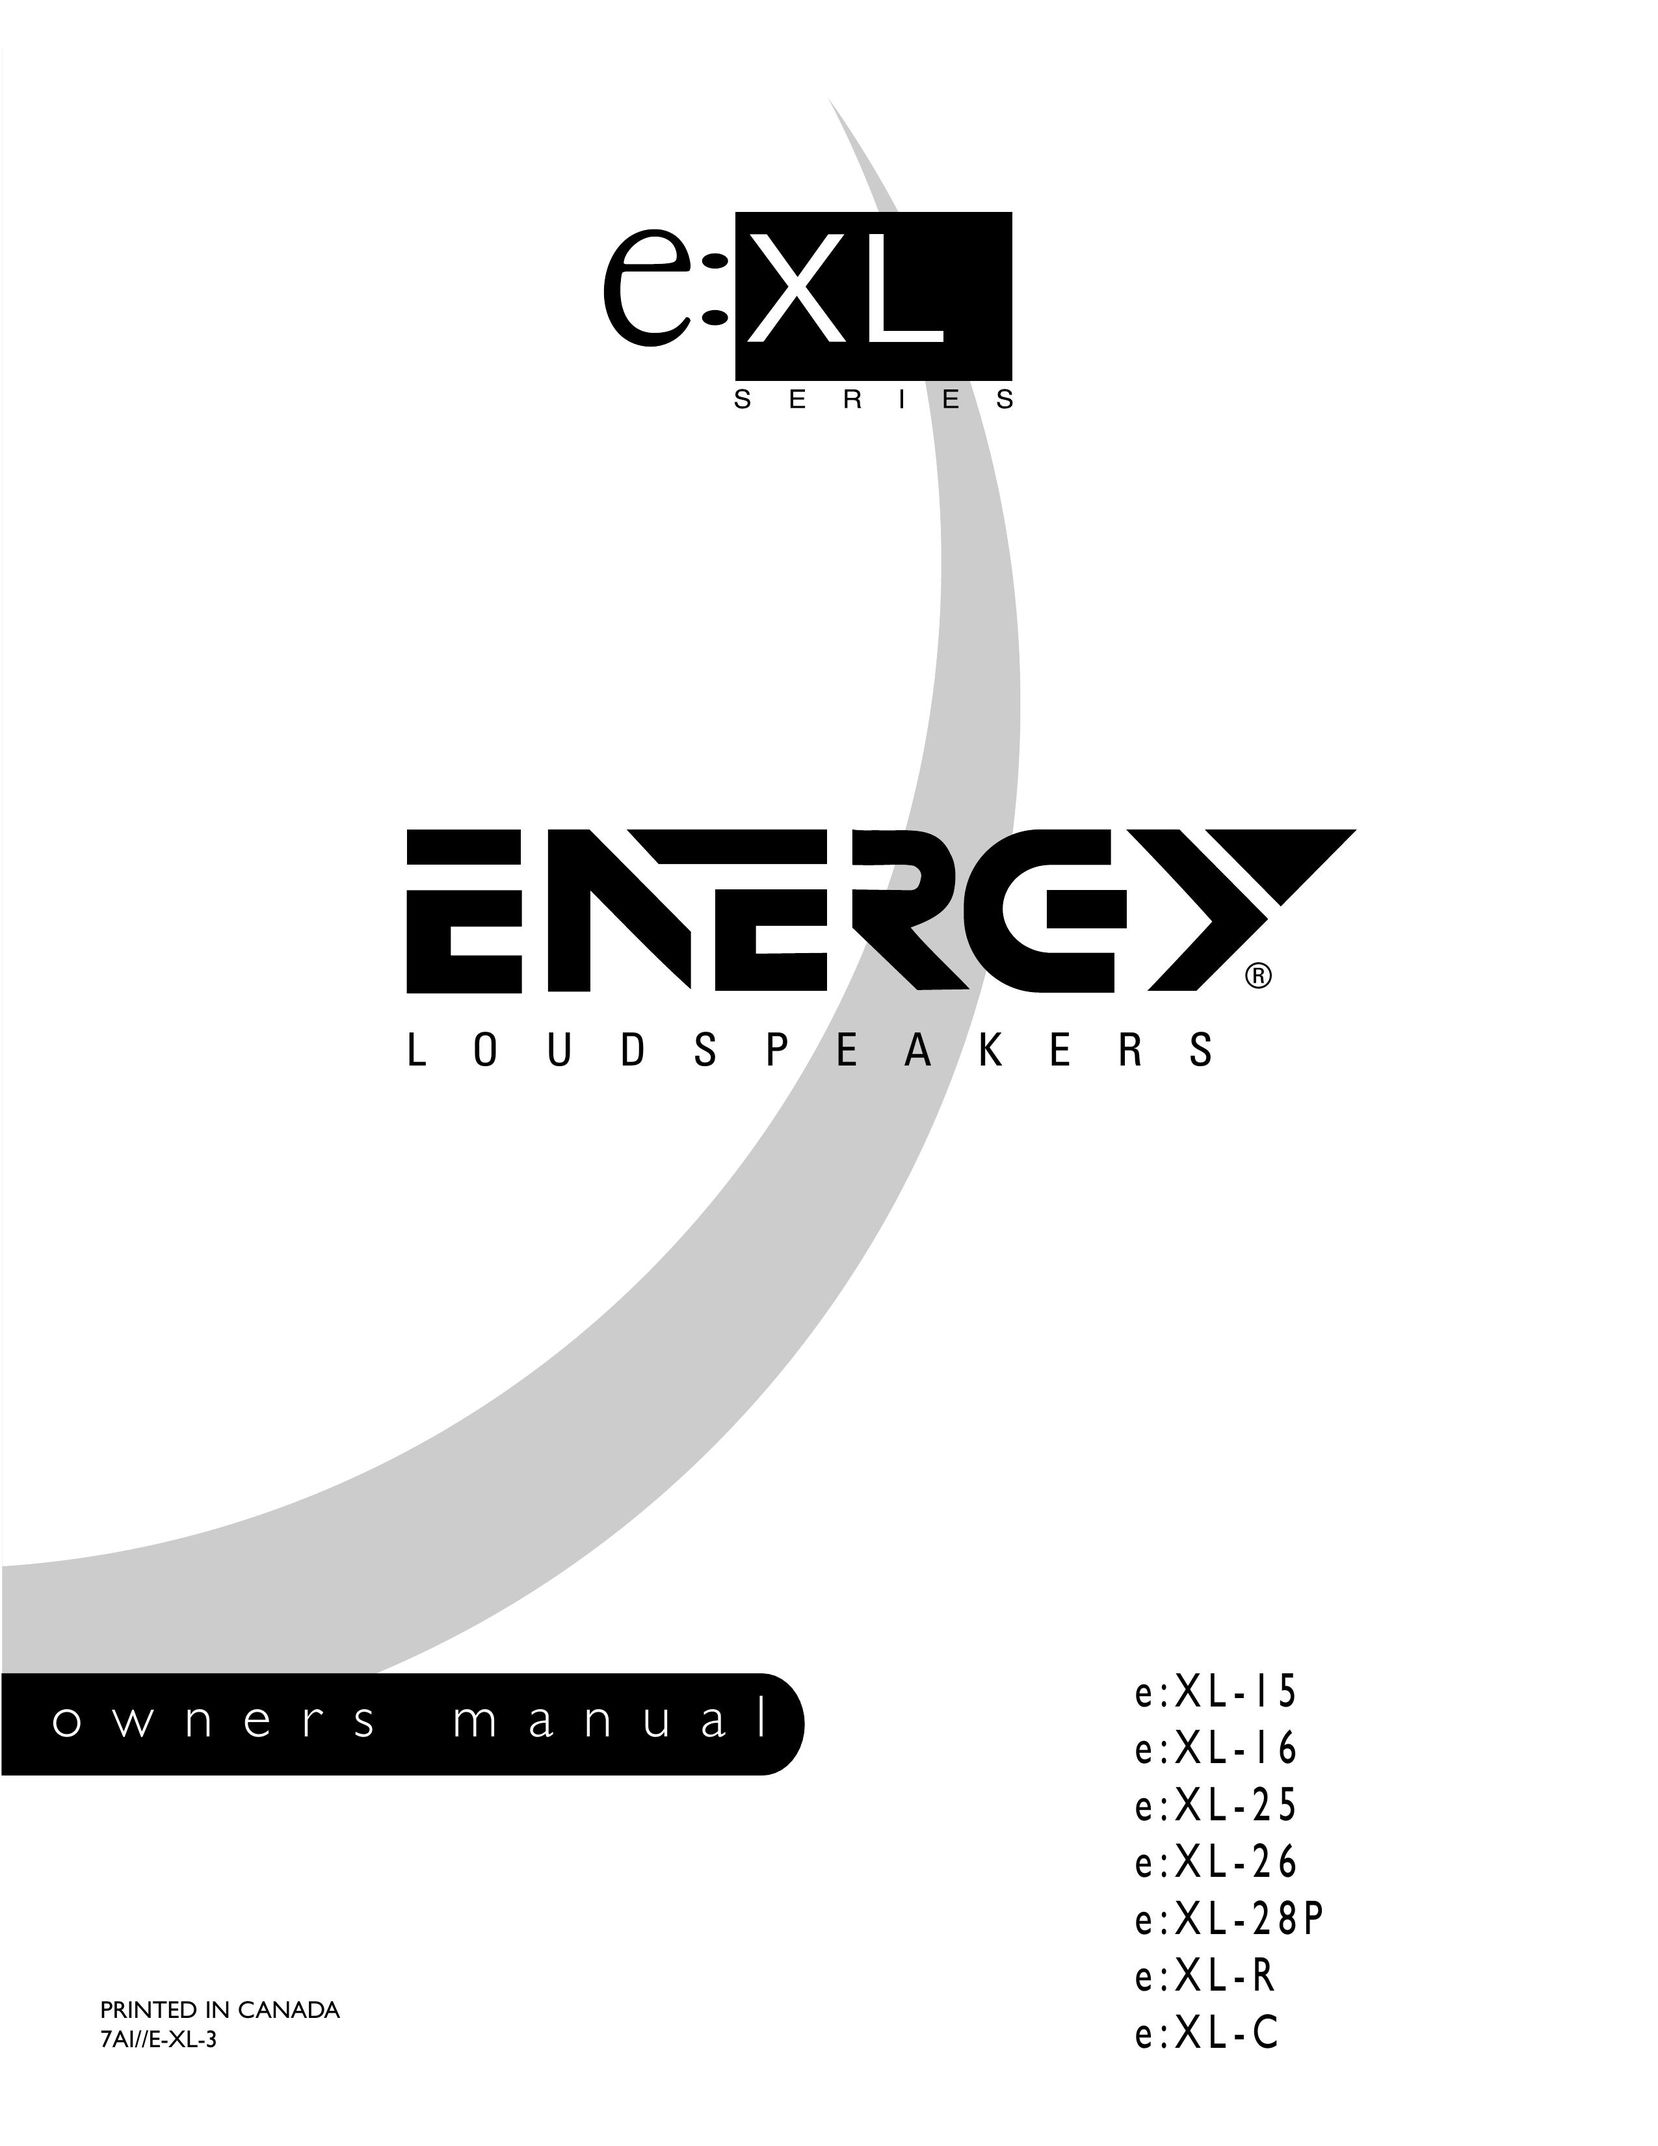 Energy Speaker Systems e:XL-28P Portable Speaker User Manual